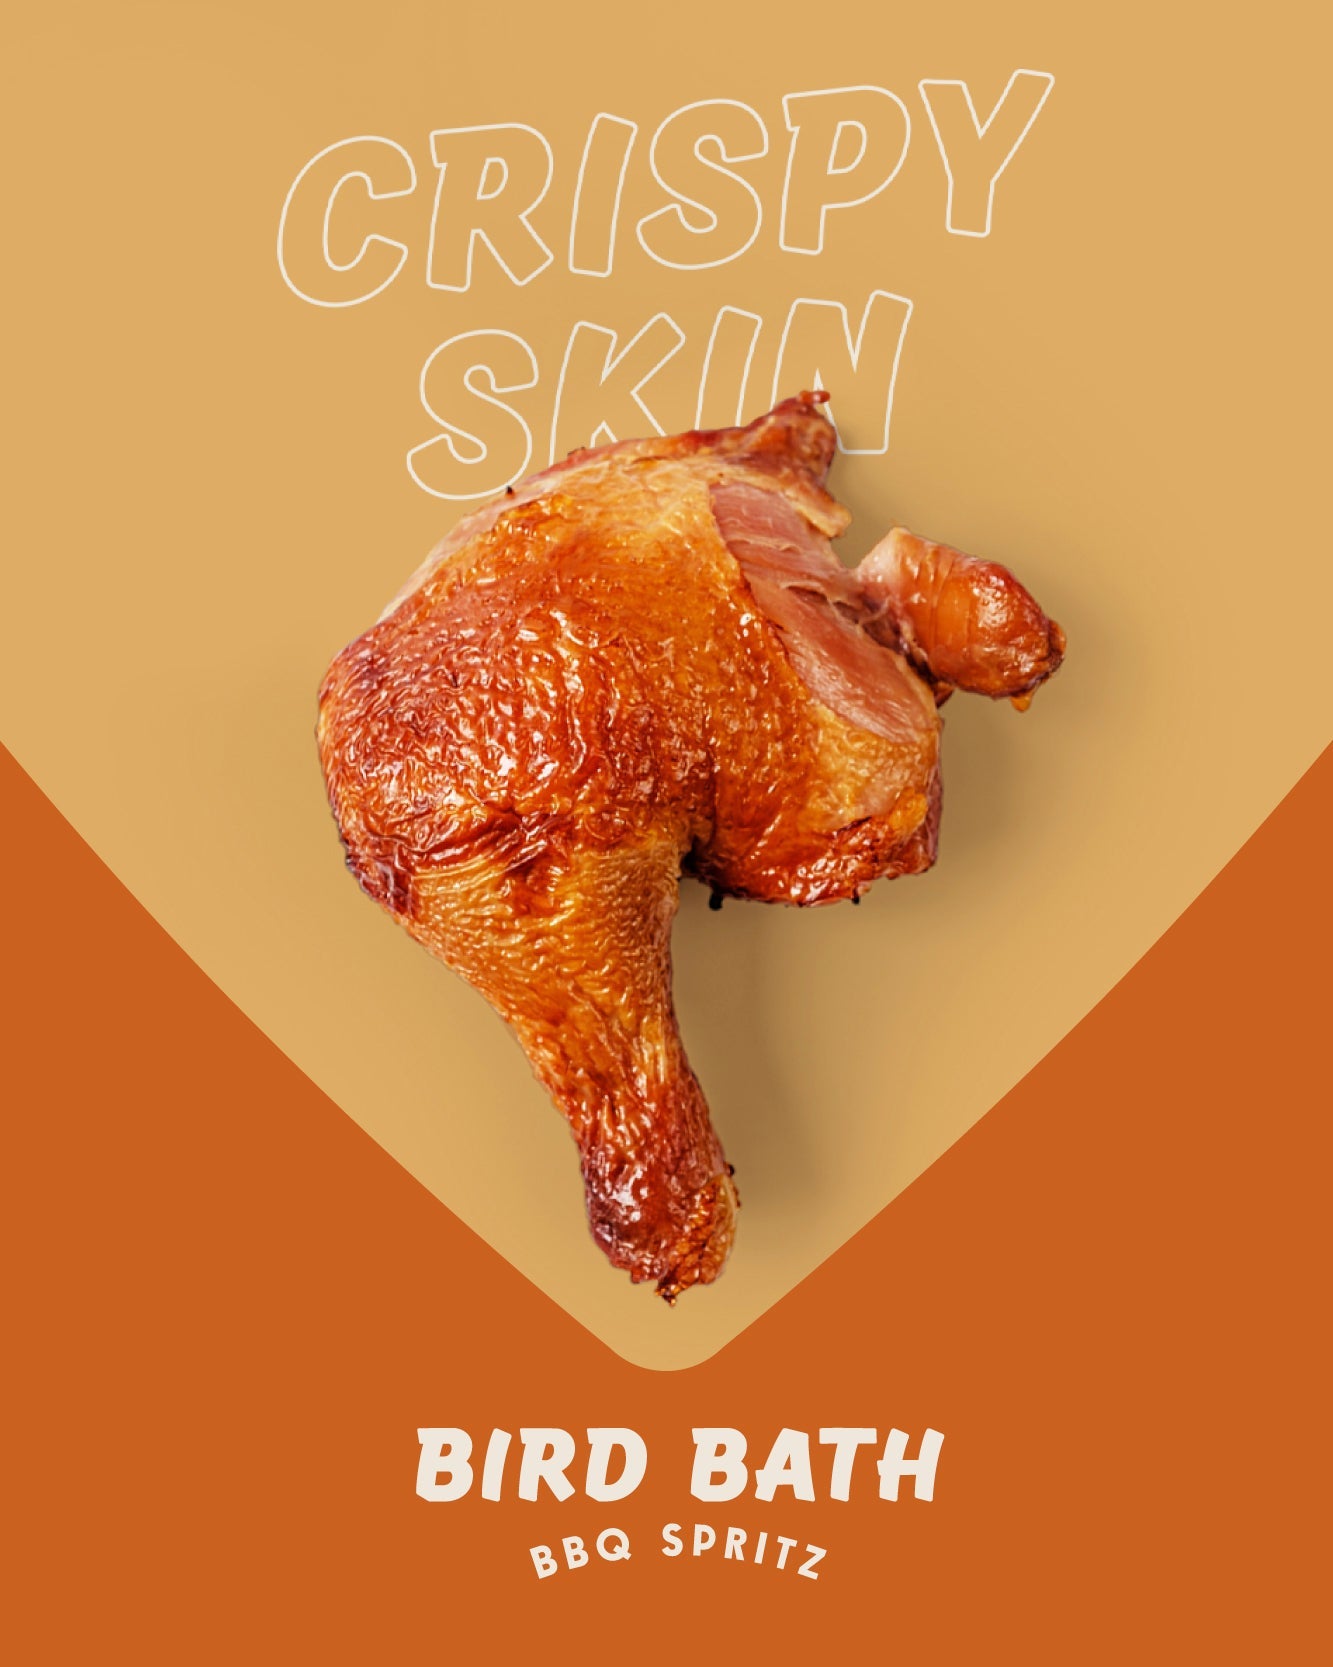 BIRD BATH BBQ SPRITZ TRIO Meat Sweats 